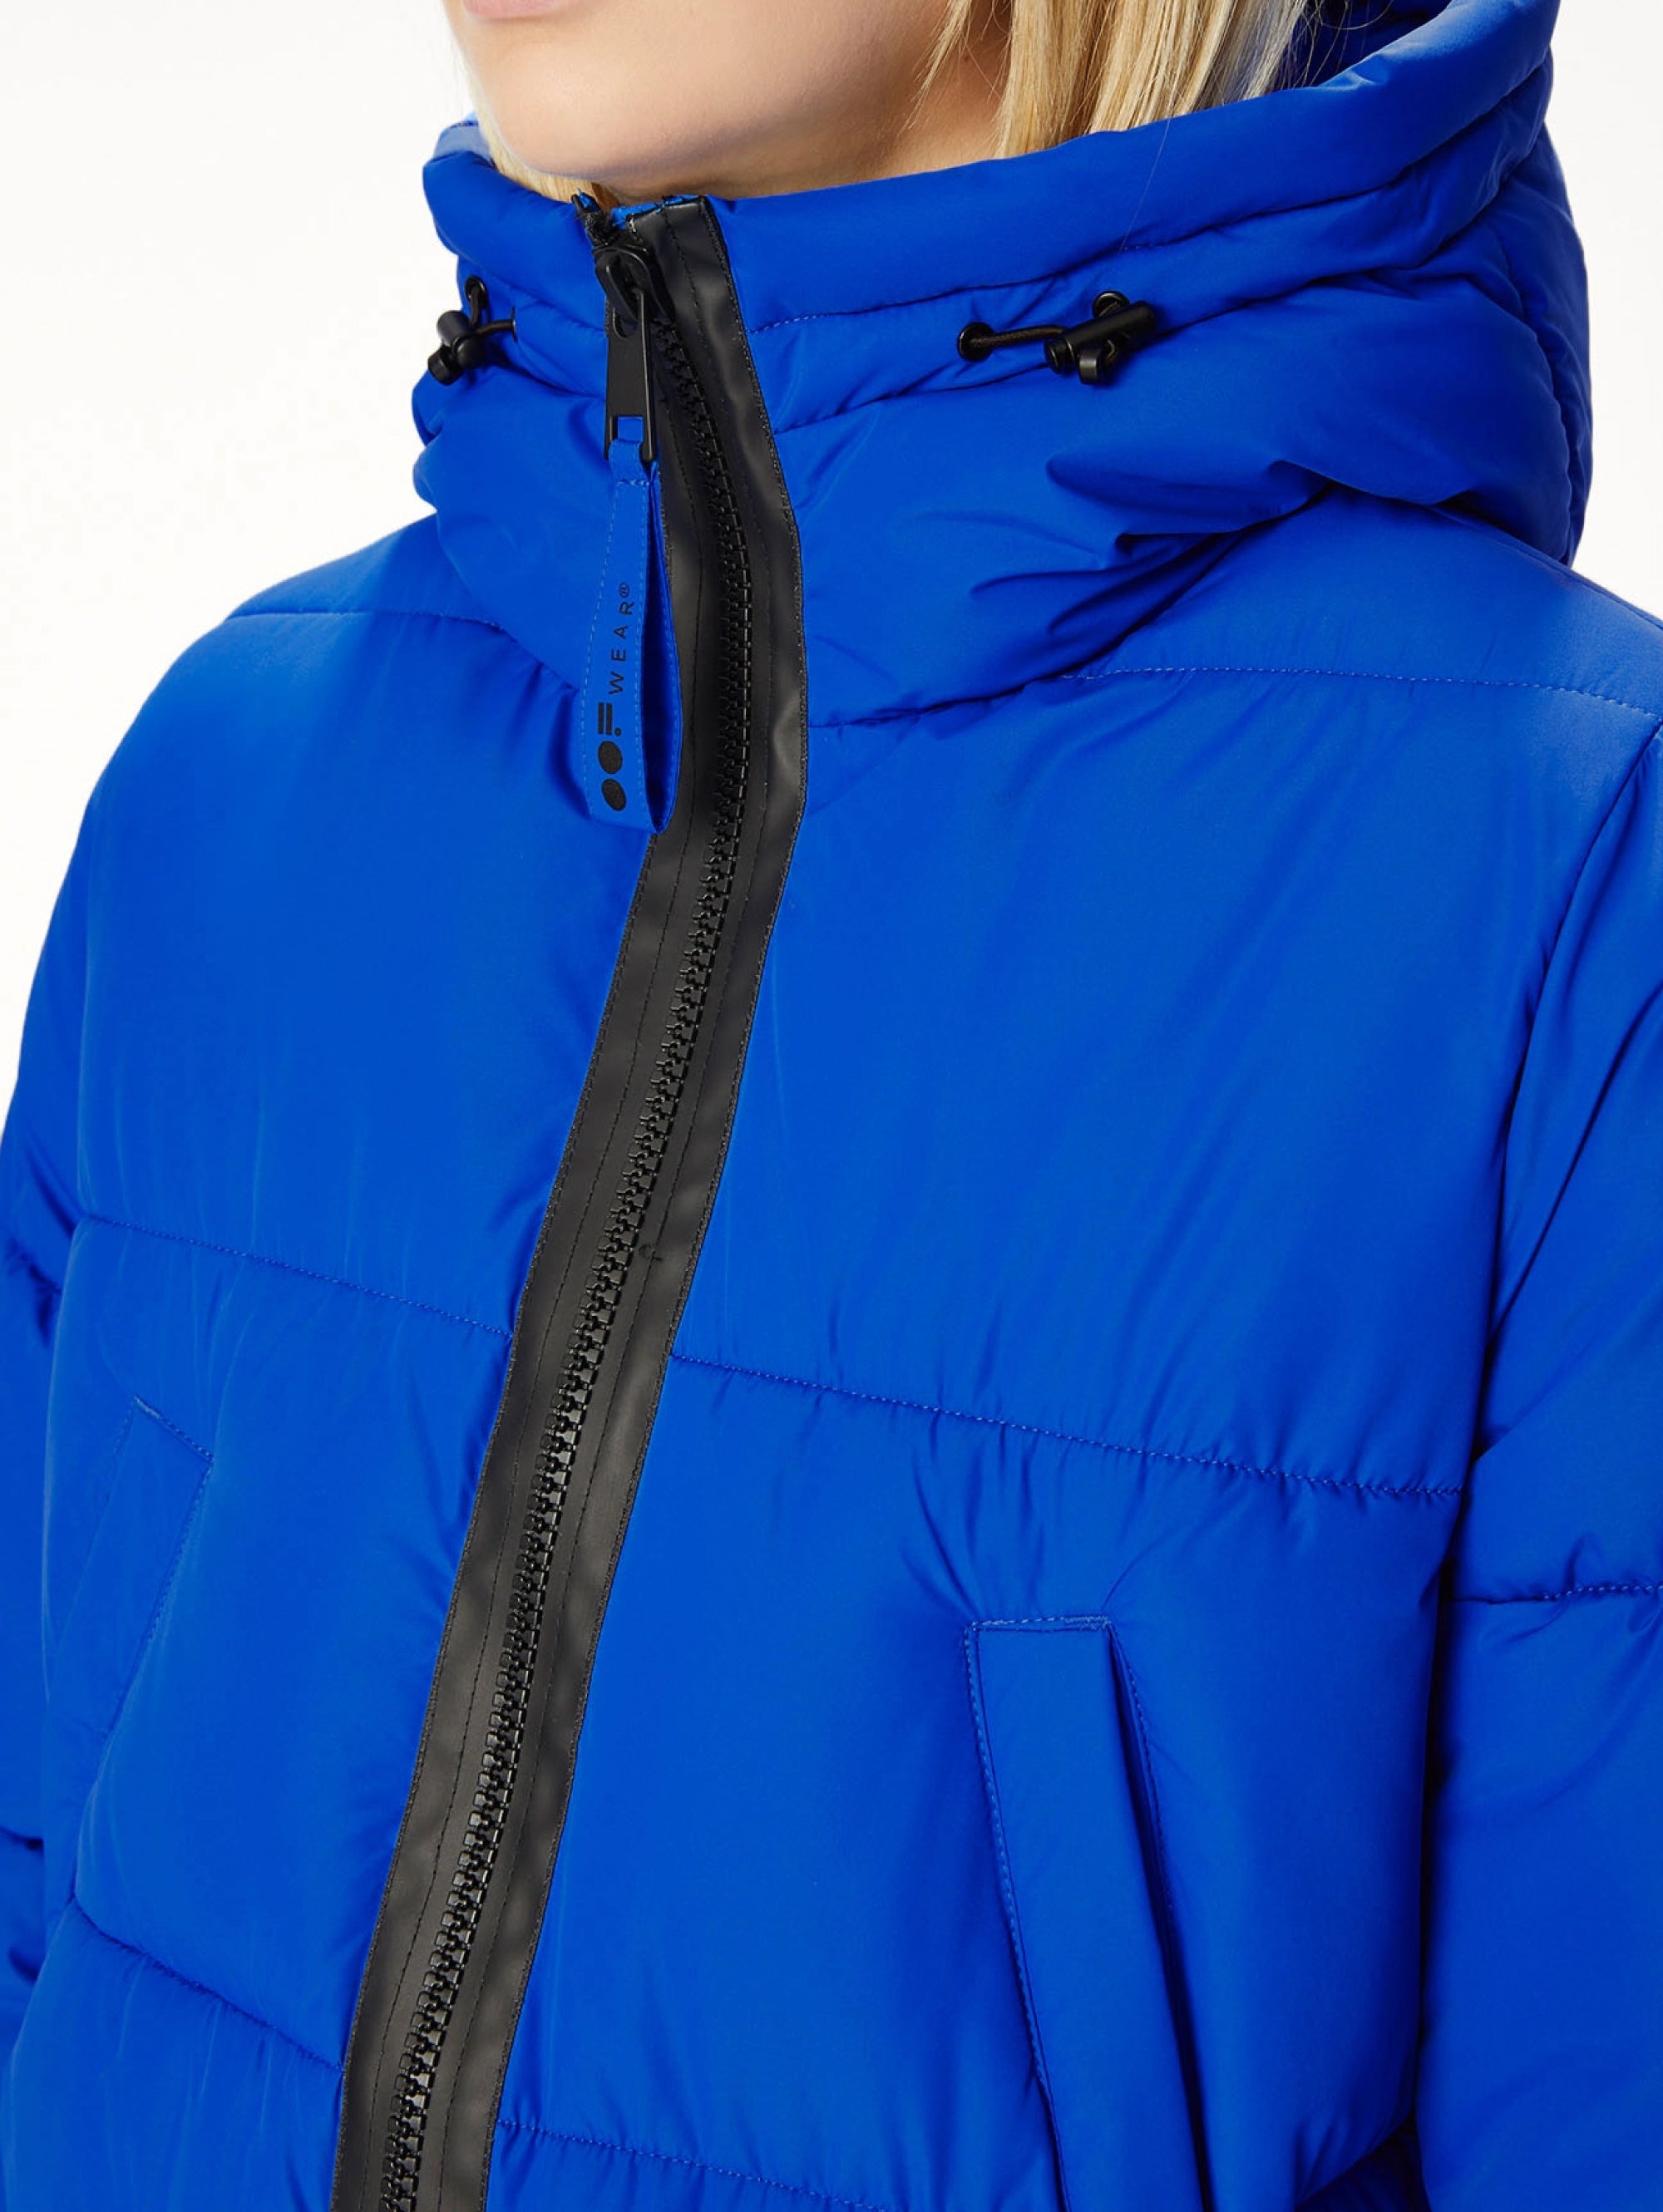 Nylon Jacket with Blue Hood